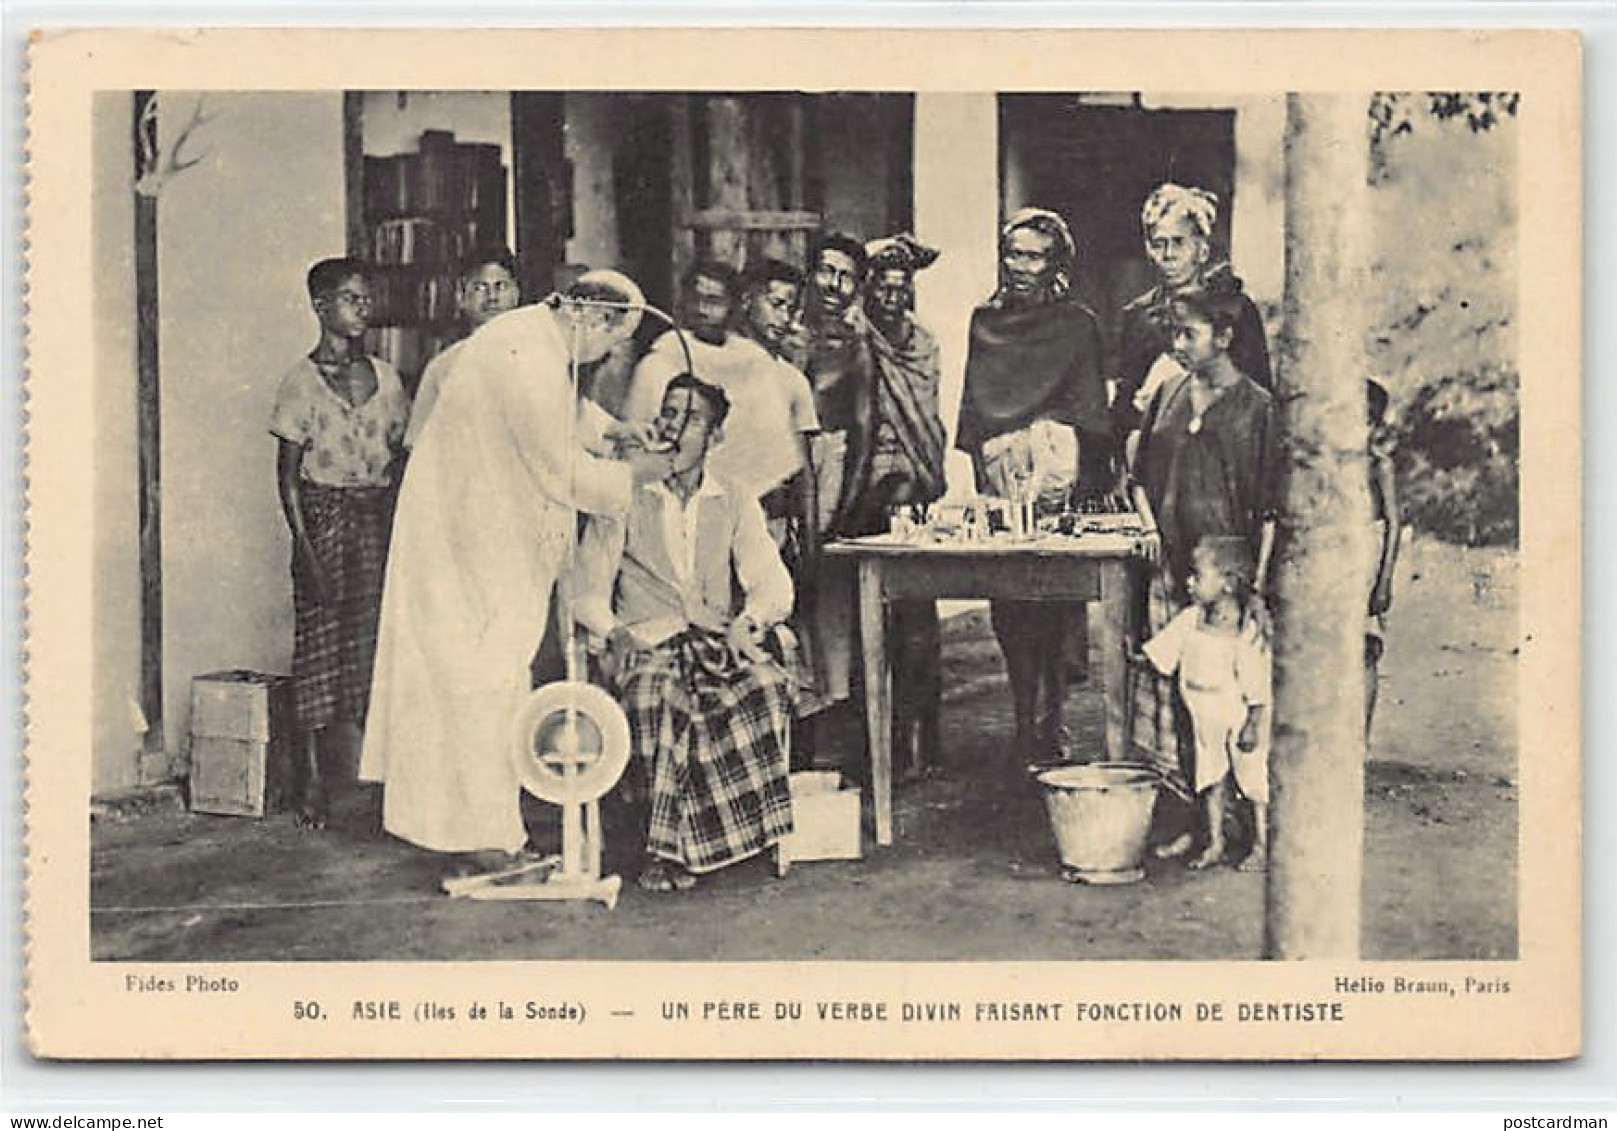 Indonesia - Sunda Islands - Kepulauan Sunda - The Dentist Missionary - Publ. Oeuvre De La Propagation De La Foi - Indonesia